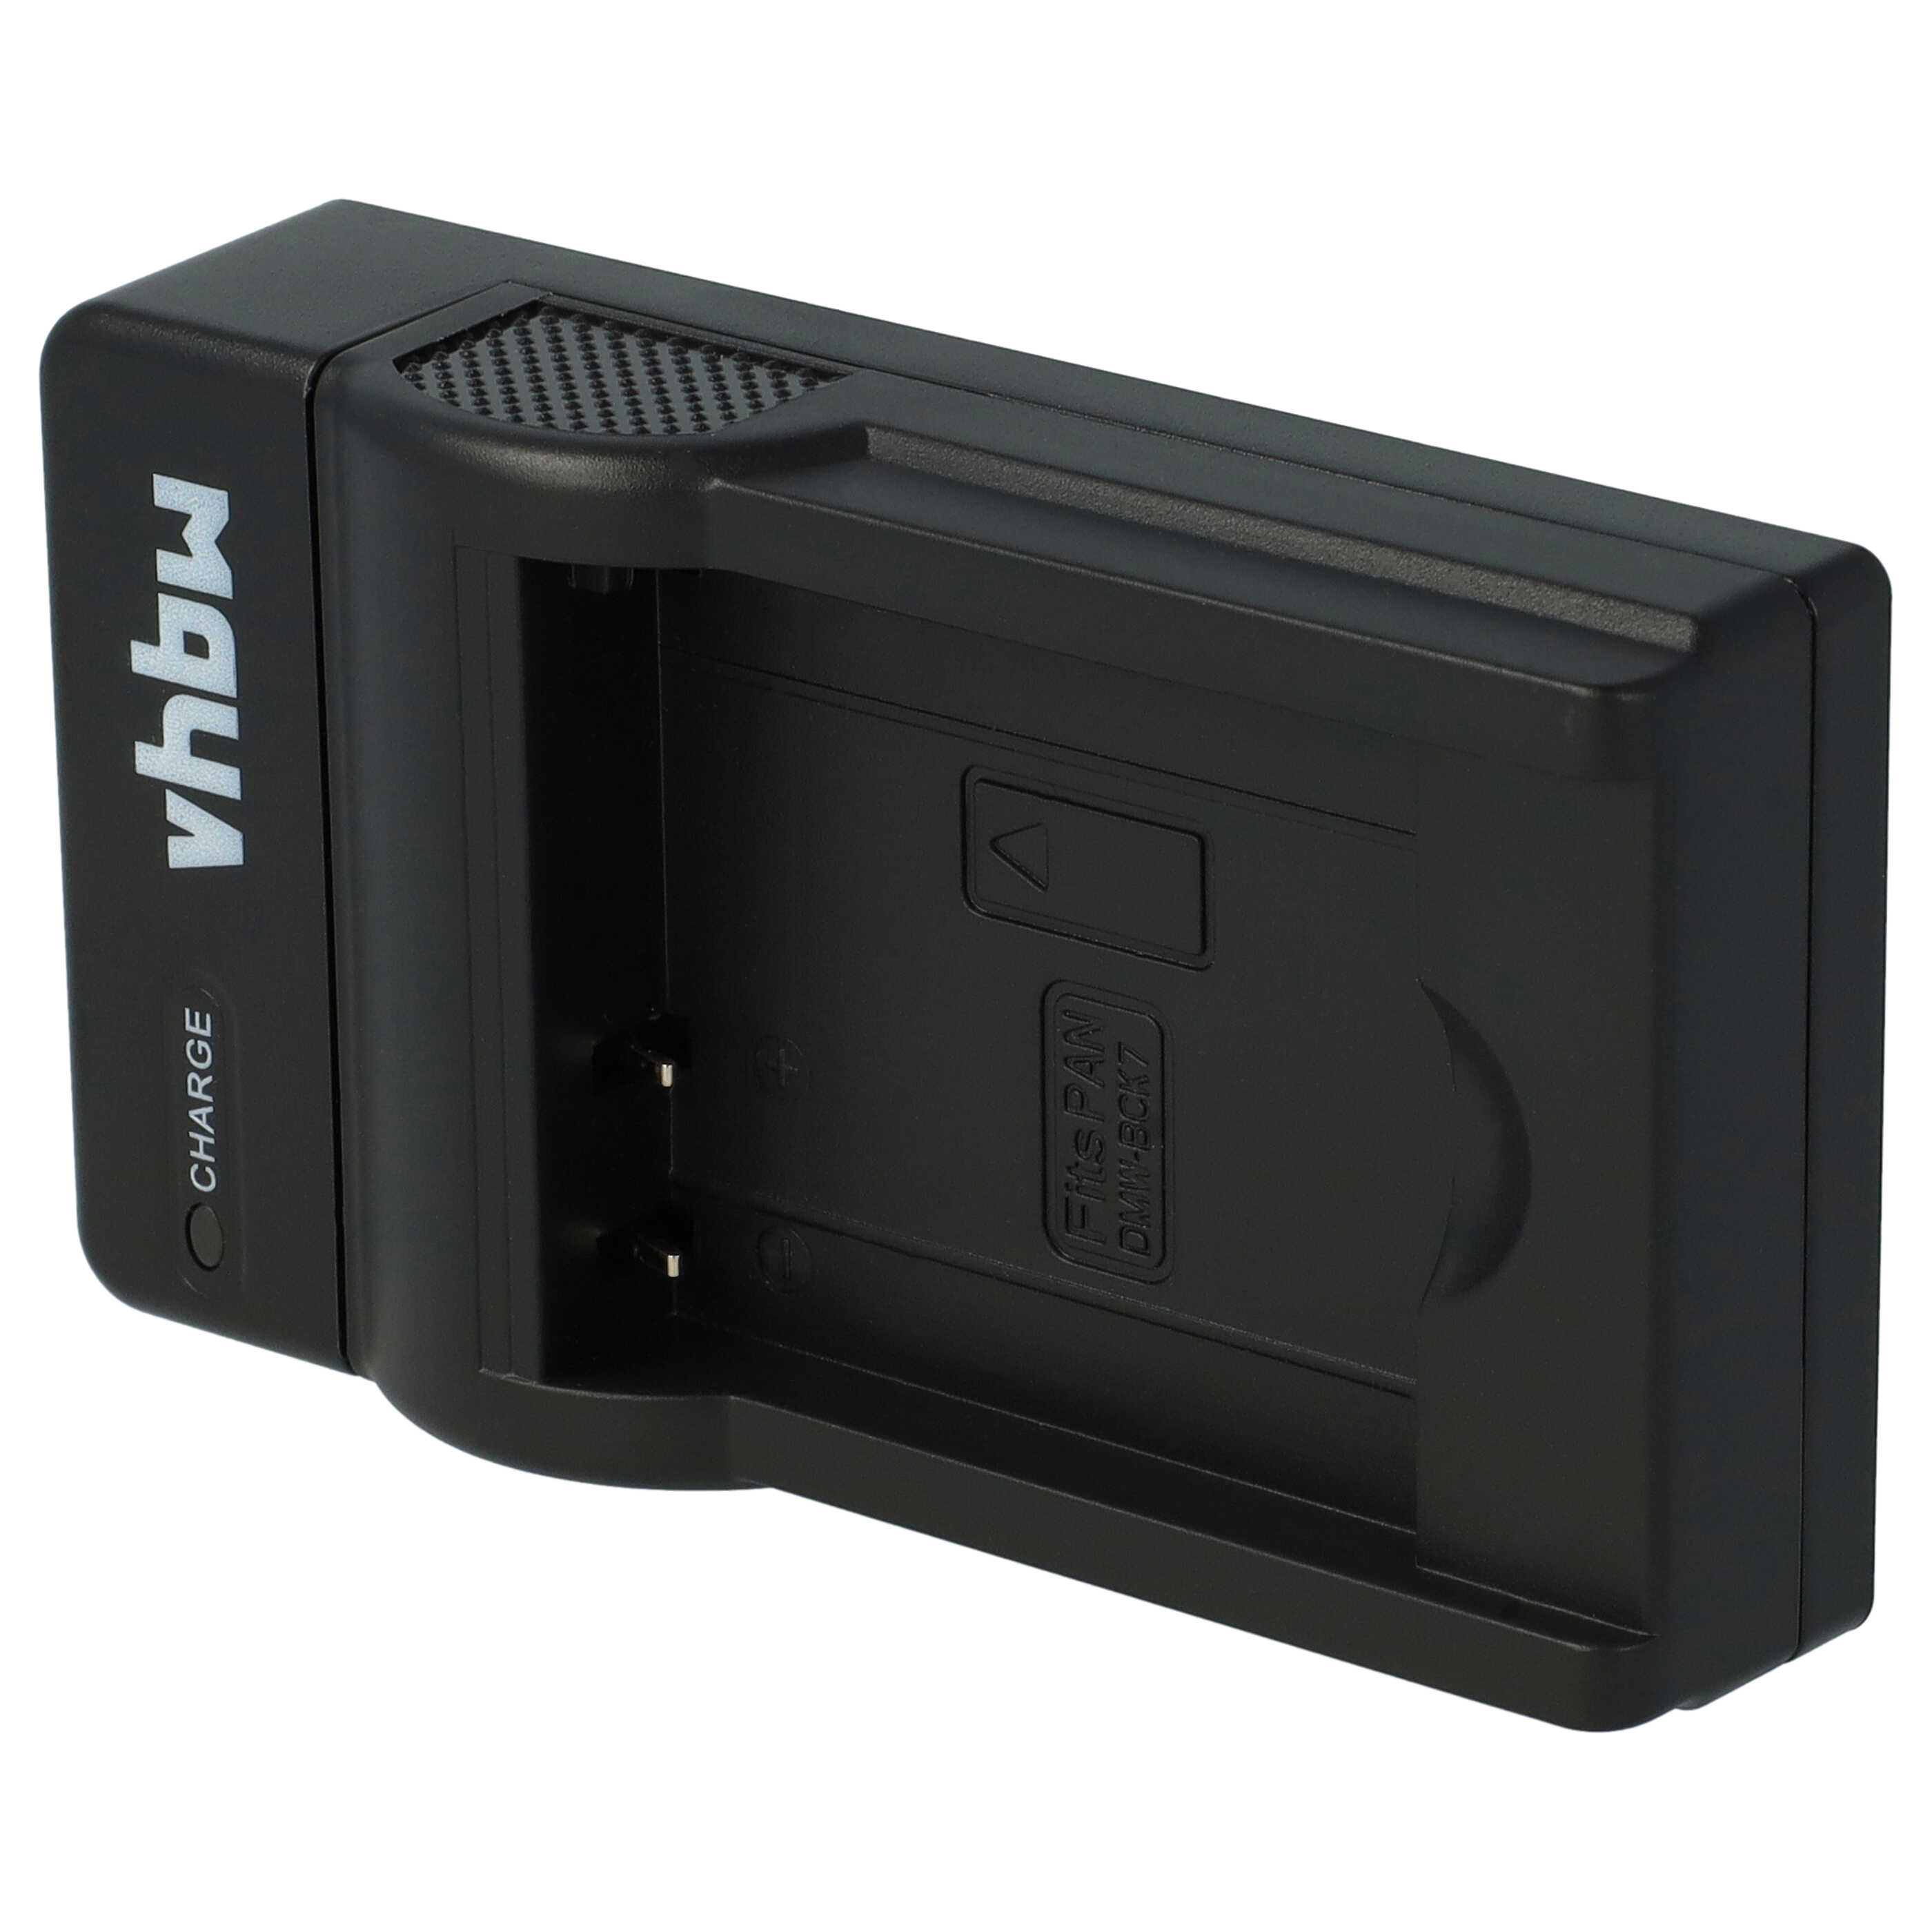 Cargador para cámara Lumix - 0,5A 4,2V 38cm